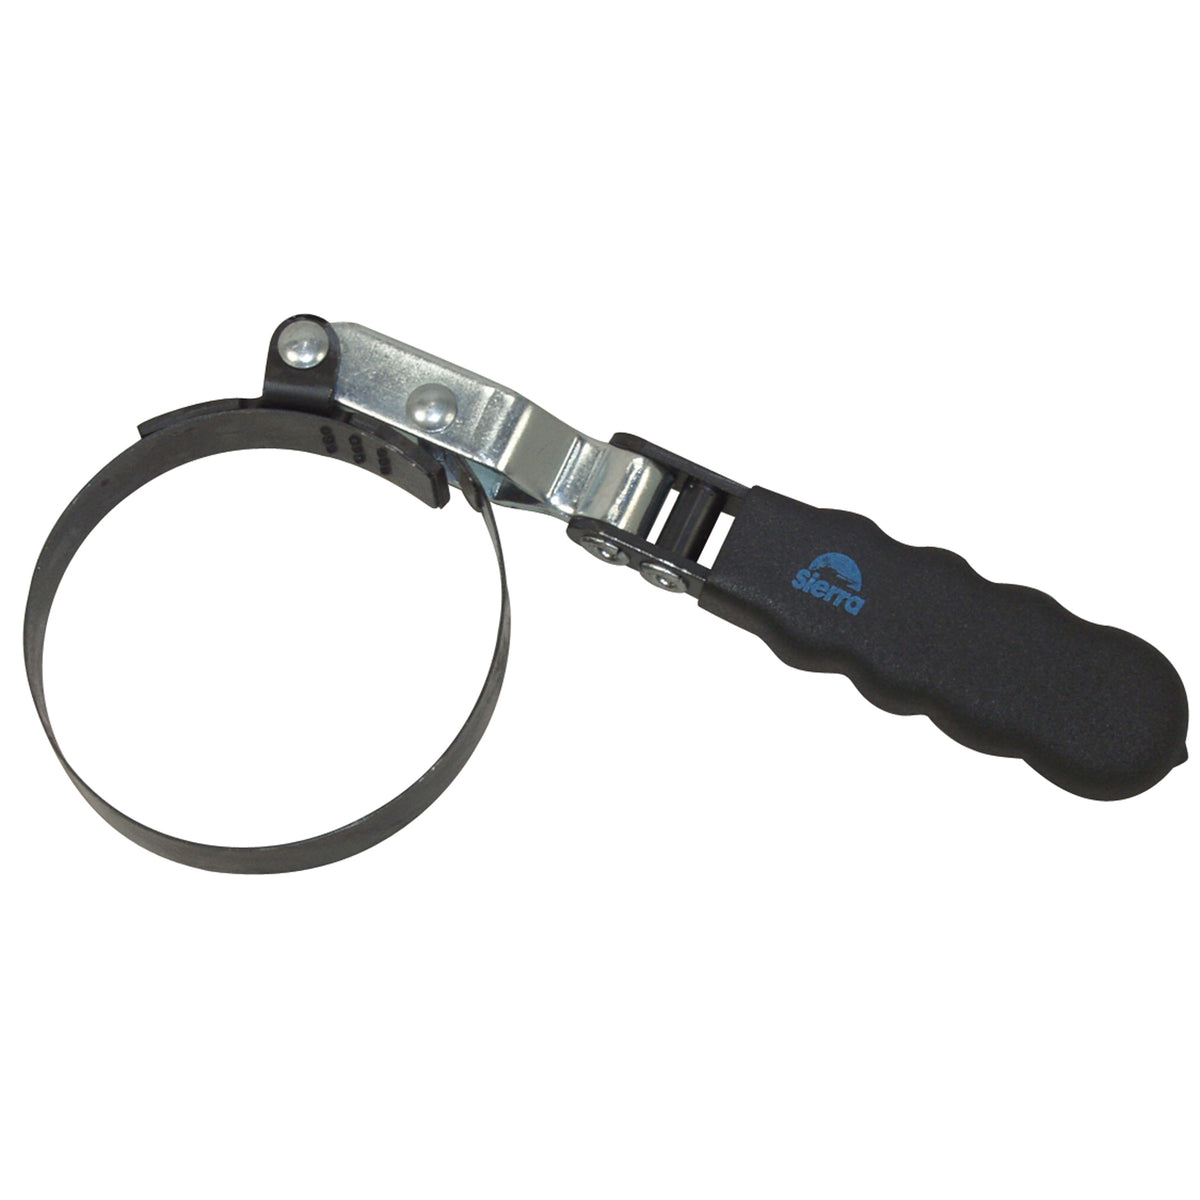 Sierra 18-9790 Oil Filter Wrench